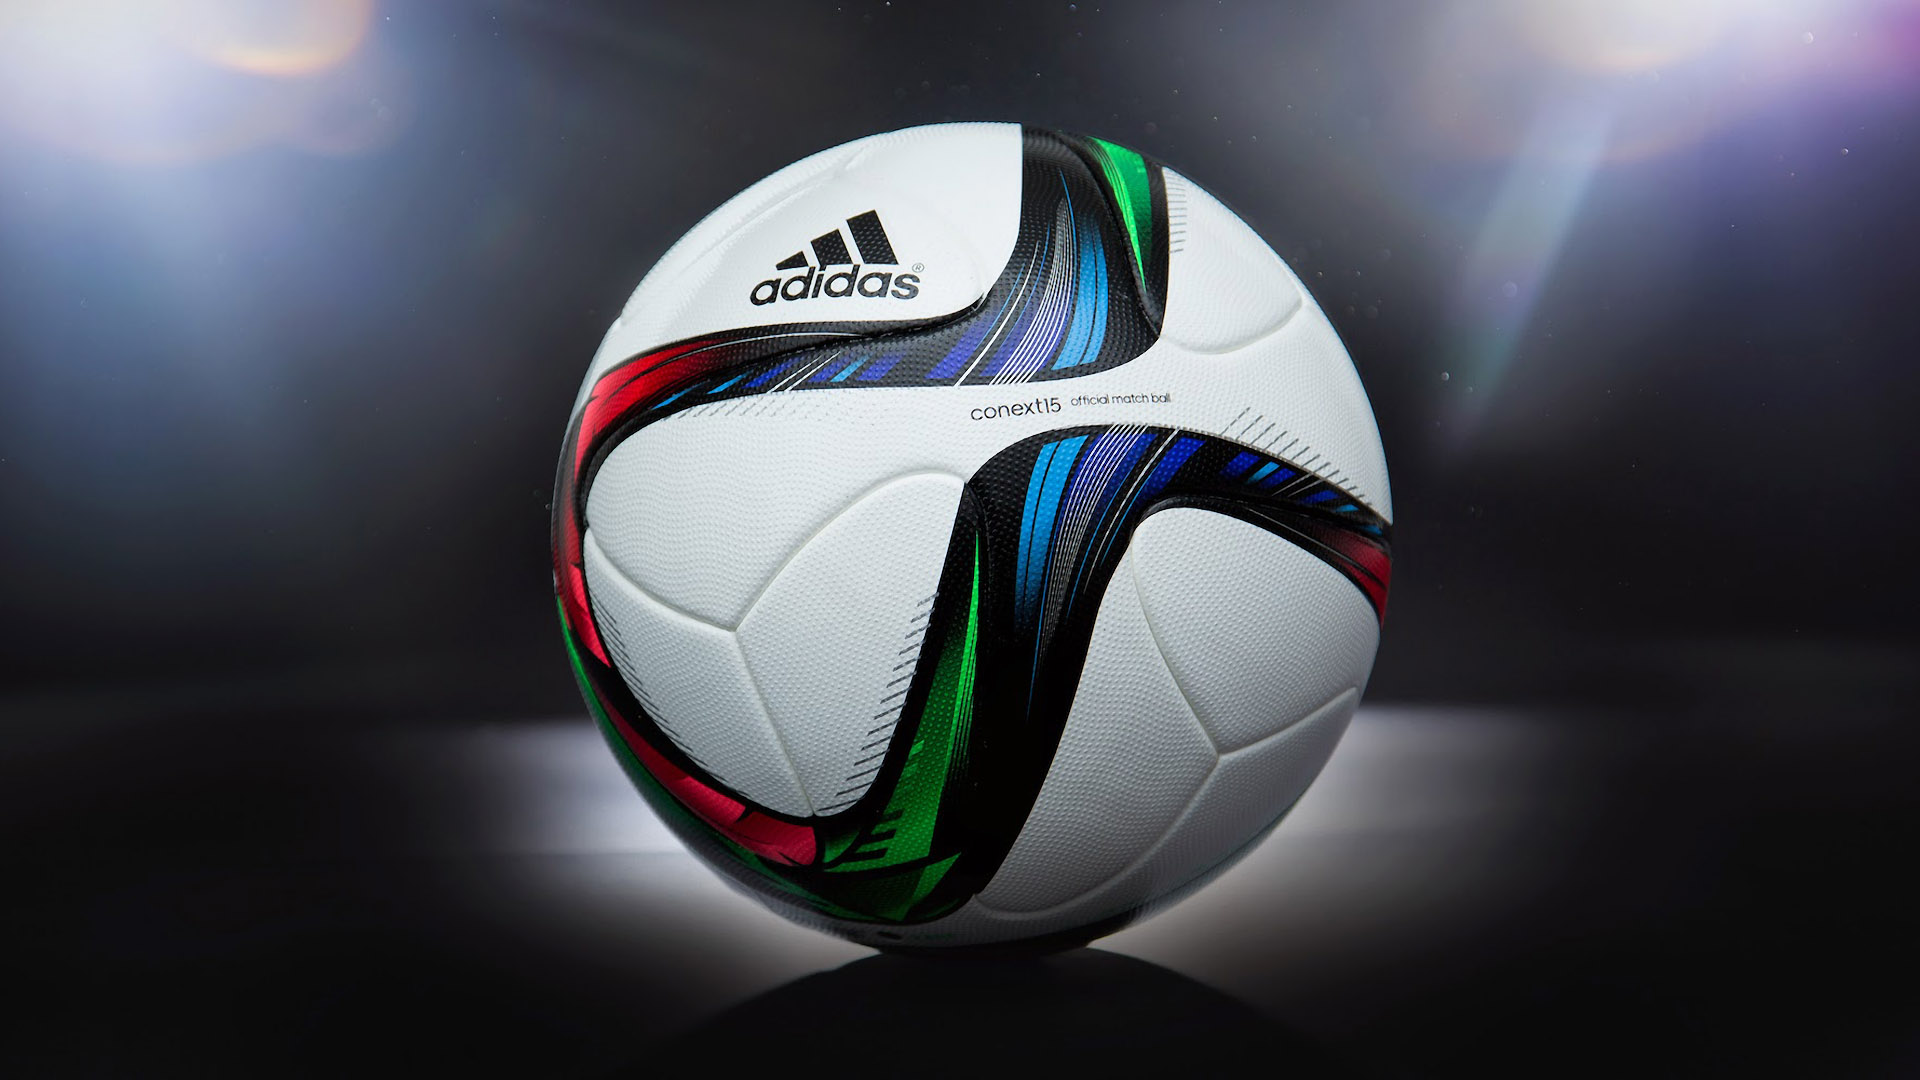 palla wallpaper hd,palla da calcio,calcio,pallone,pallavolo,attrezzatura sportiva